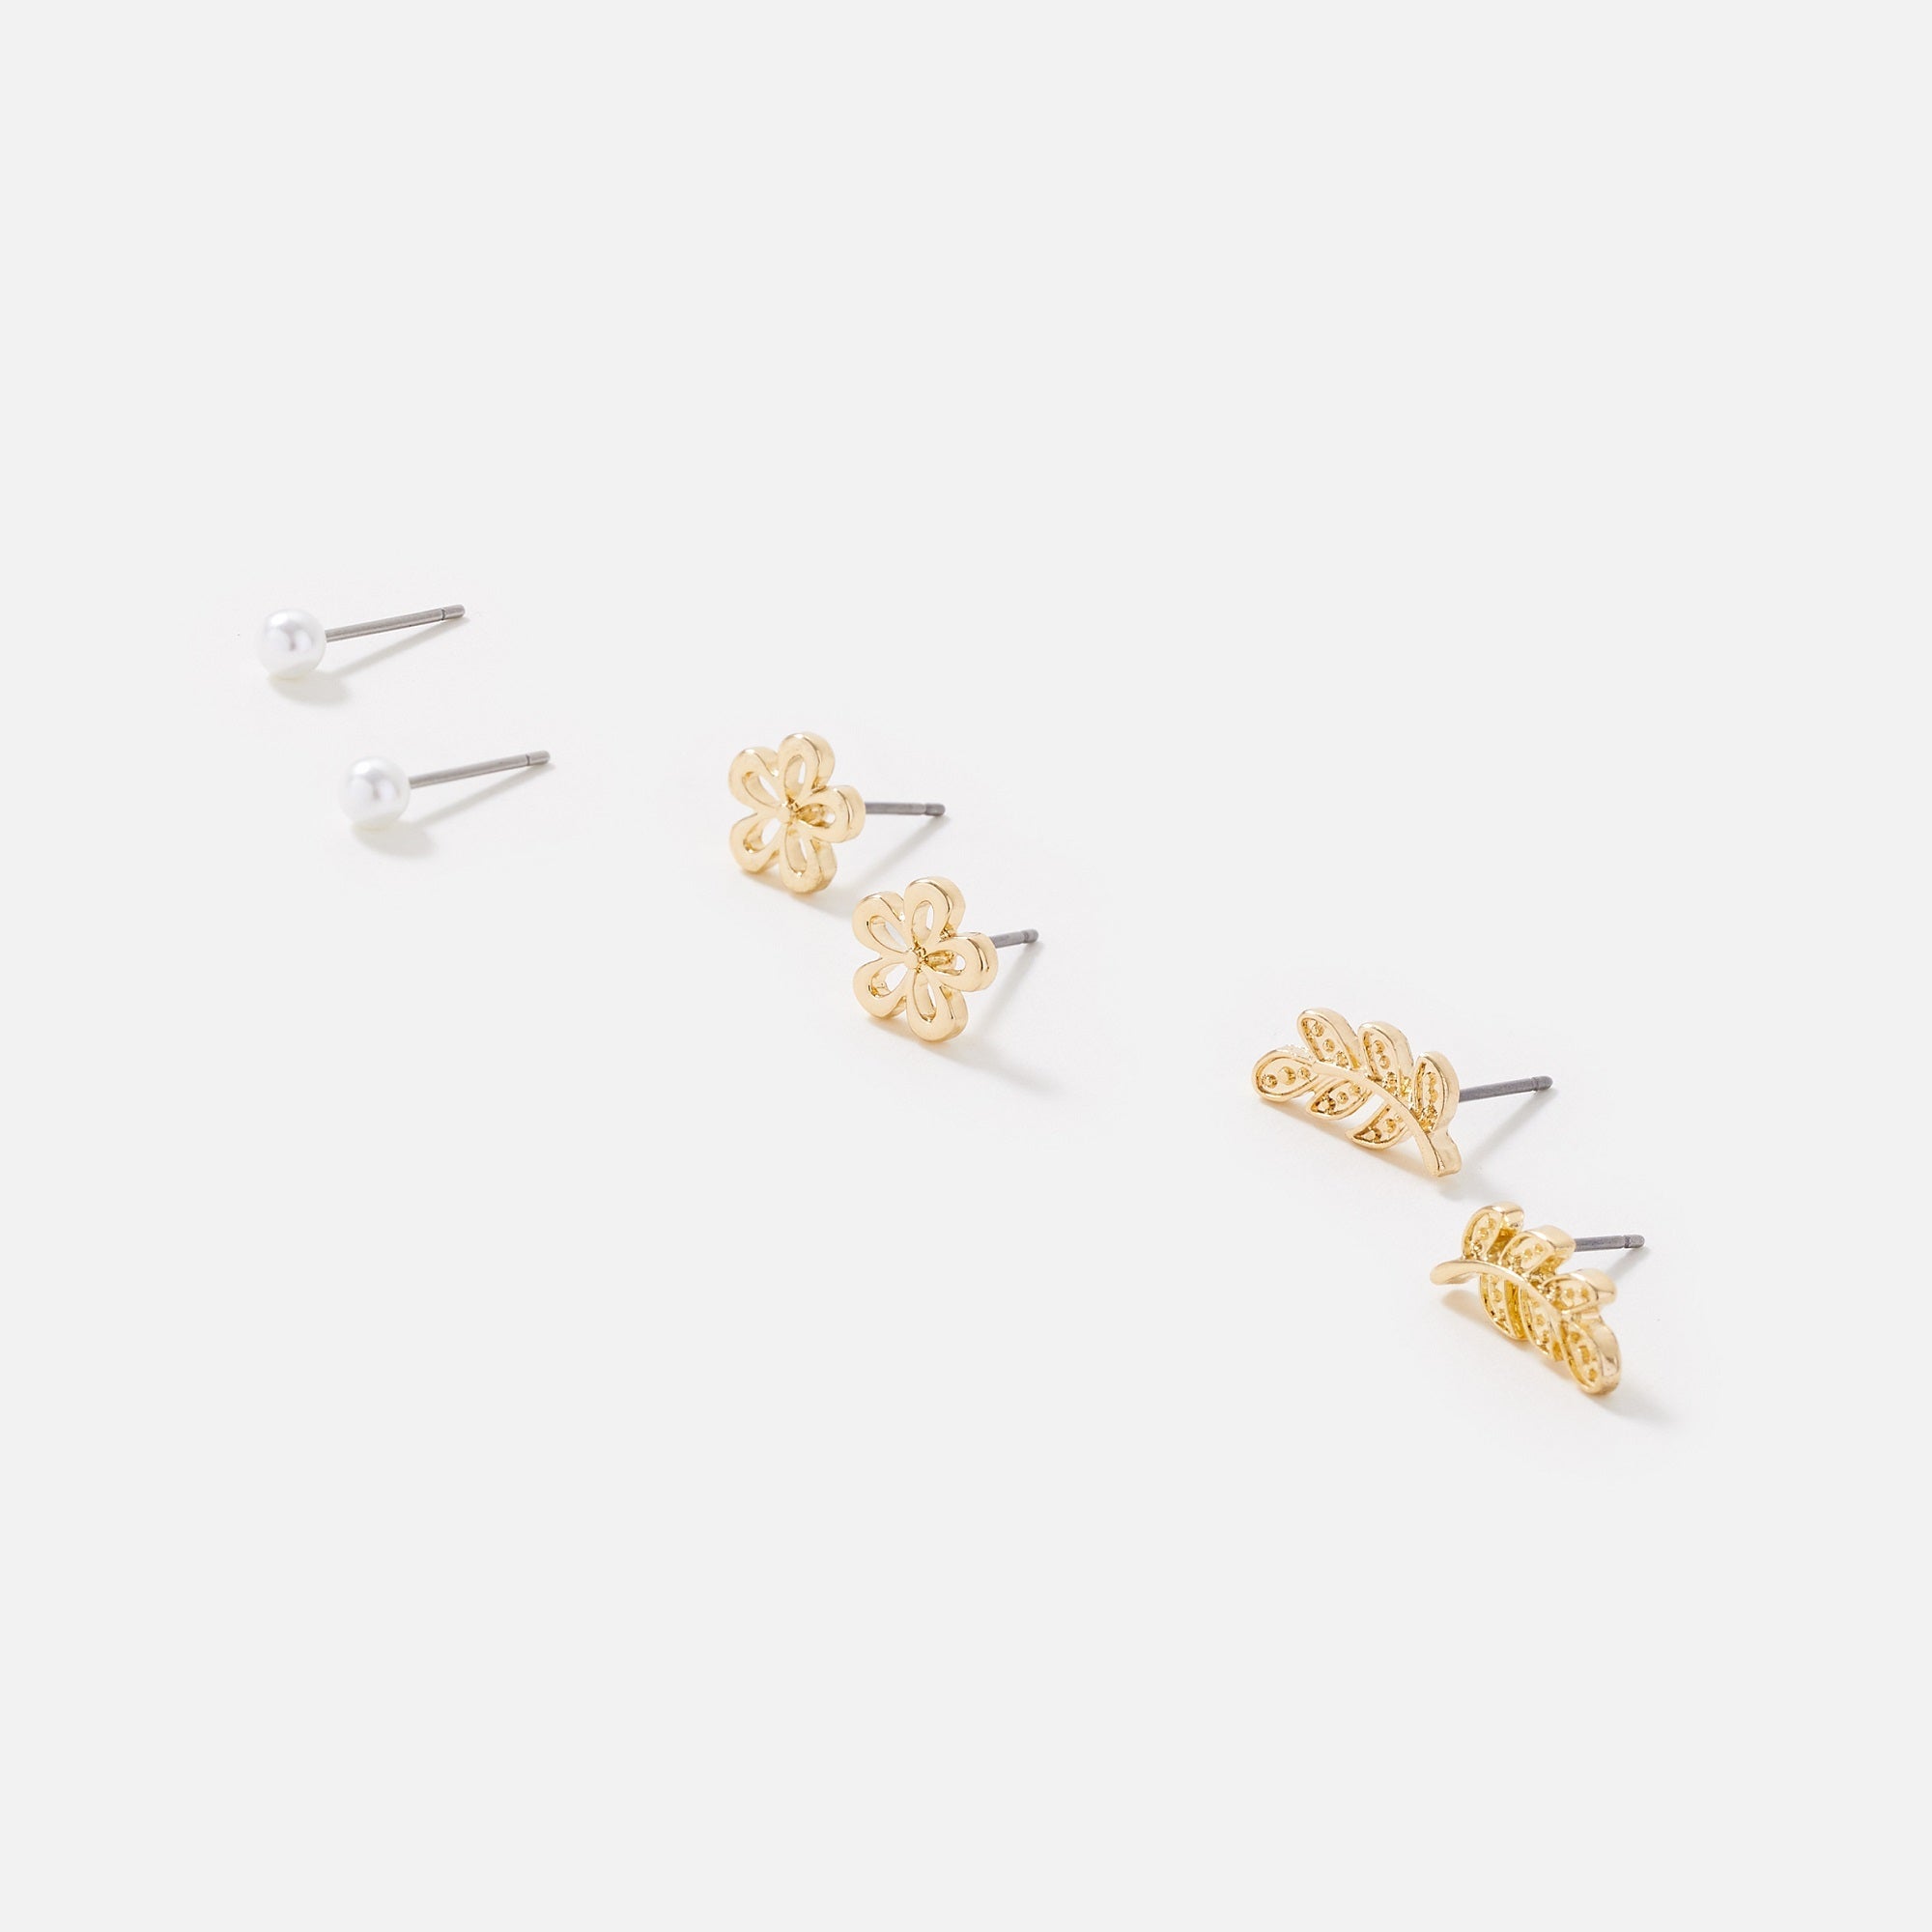 Accessorize London Women's Gold 3X Leaf Flower Stud Earring Set